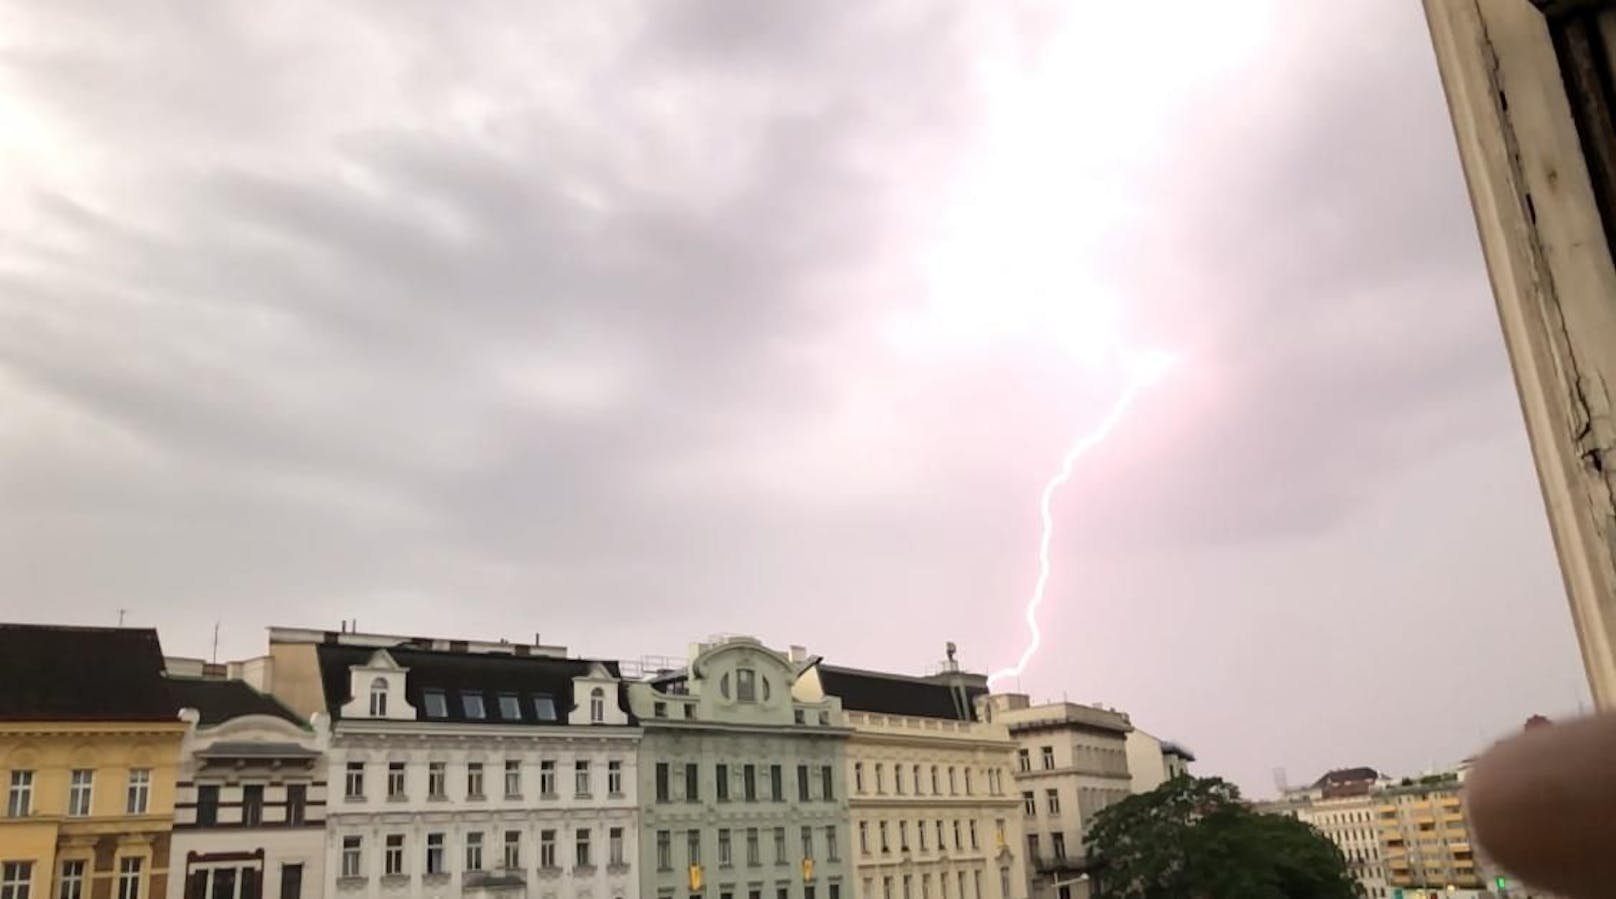 Starkes Blitz-Gewitter trifft Wien mit voller Wucht